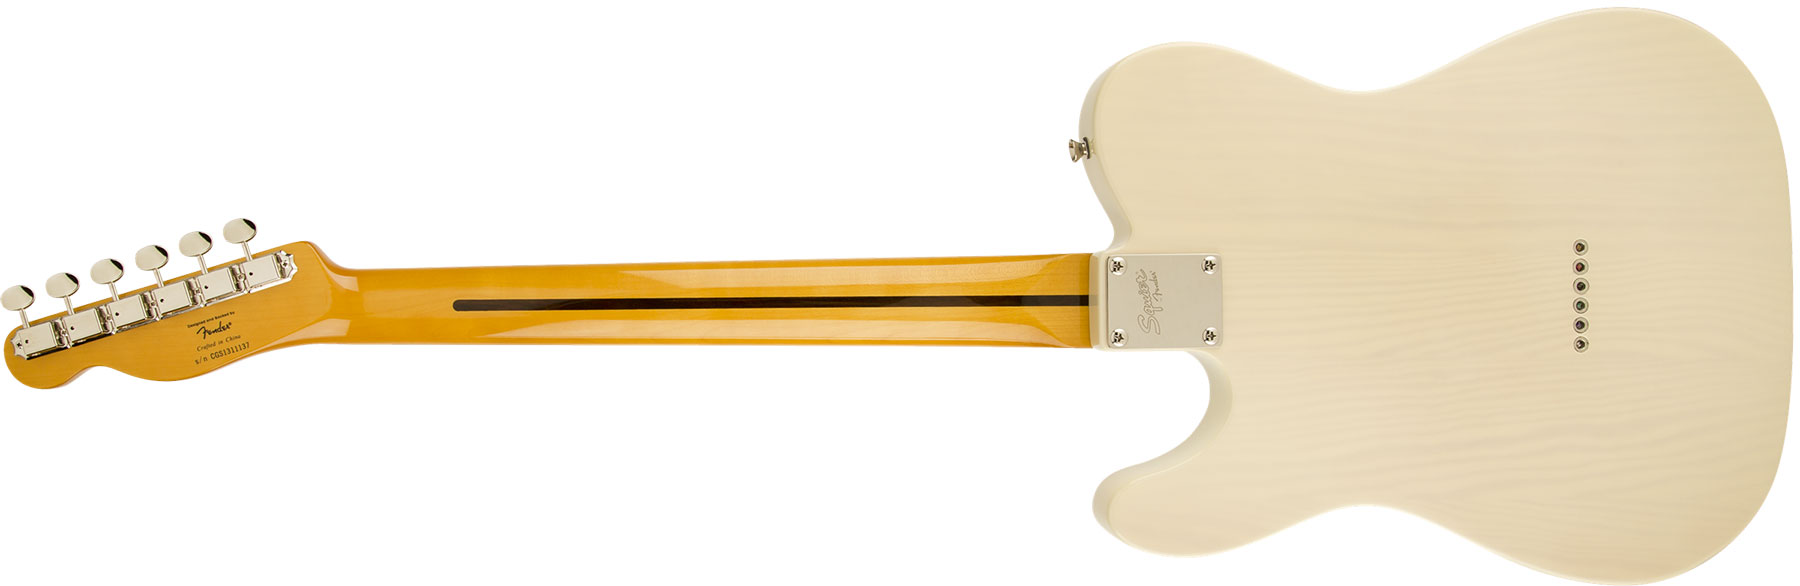 Squier Classic Vibe Telecaster '50s Mn - Vintage Blonde - Guitarra eléctrica con forma de tel - Variation 1